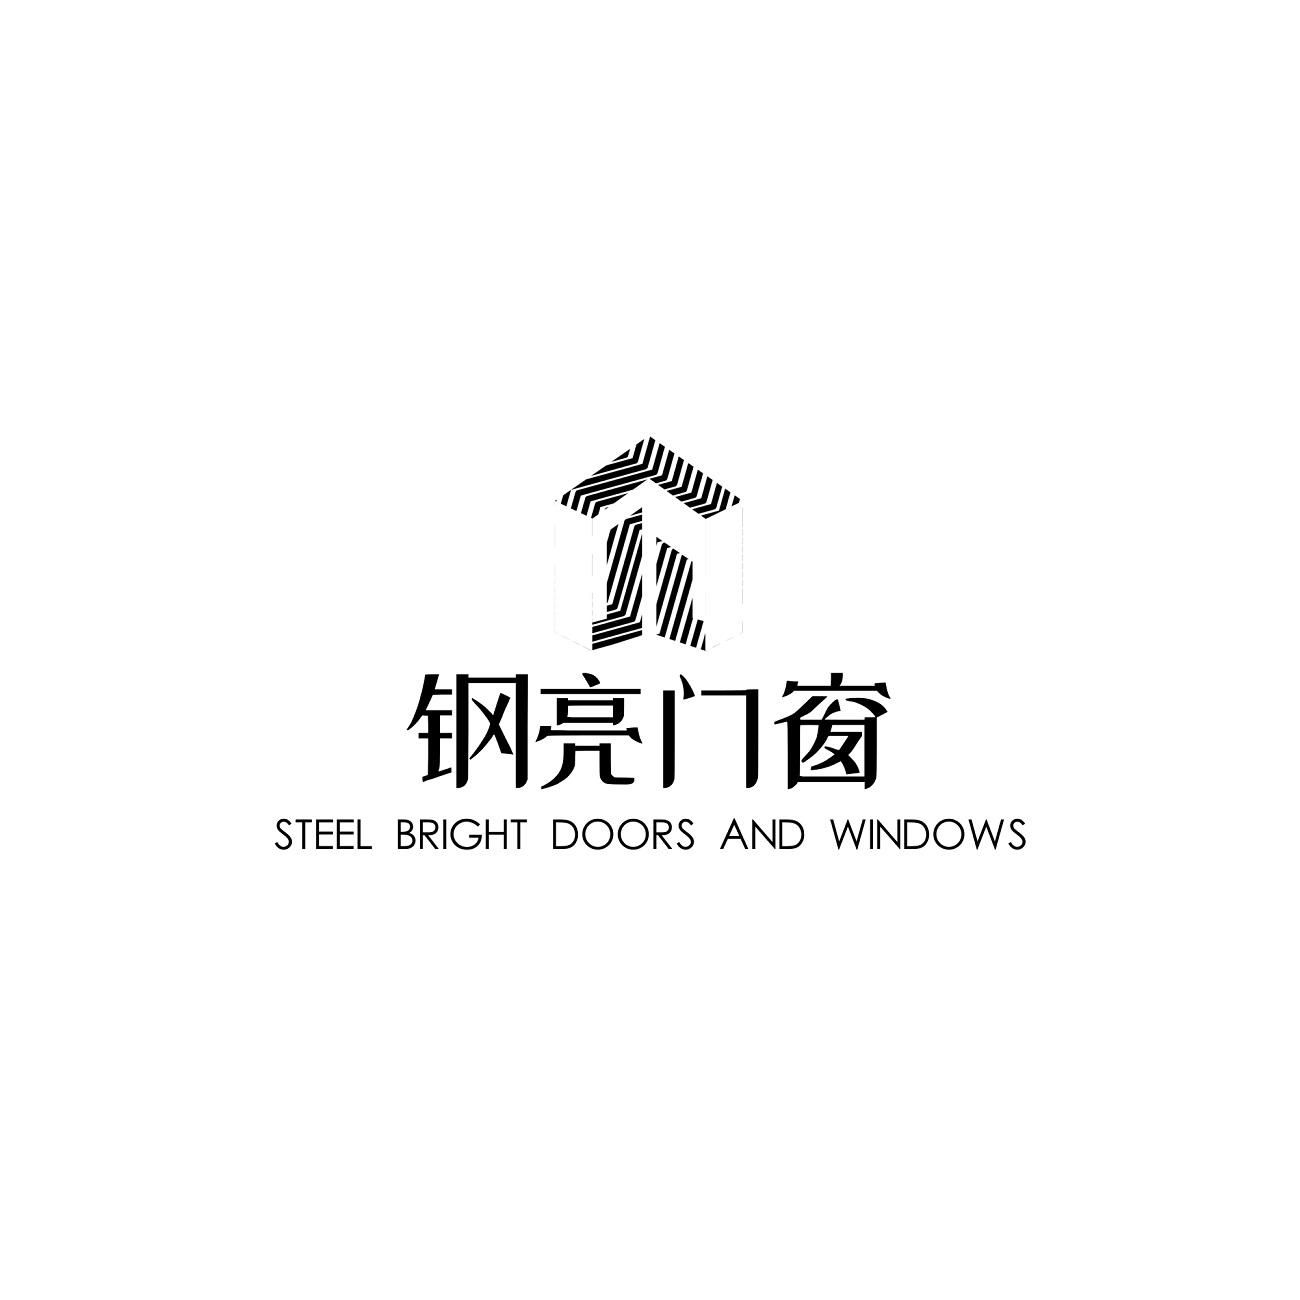 2020-03-19国际分类:第06类-金属材料商标申请人:武汉钢亮门窗有限